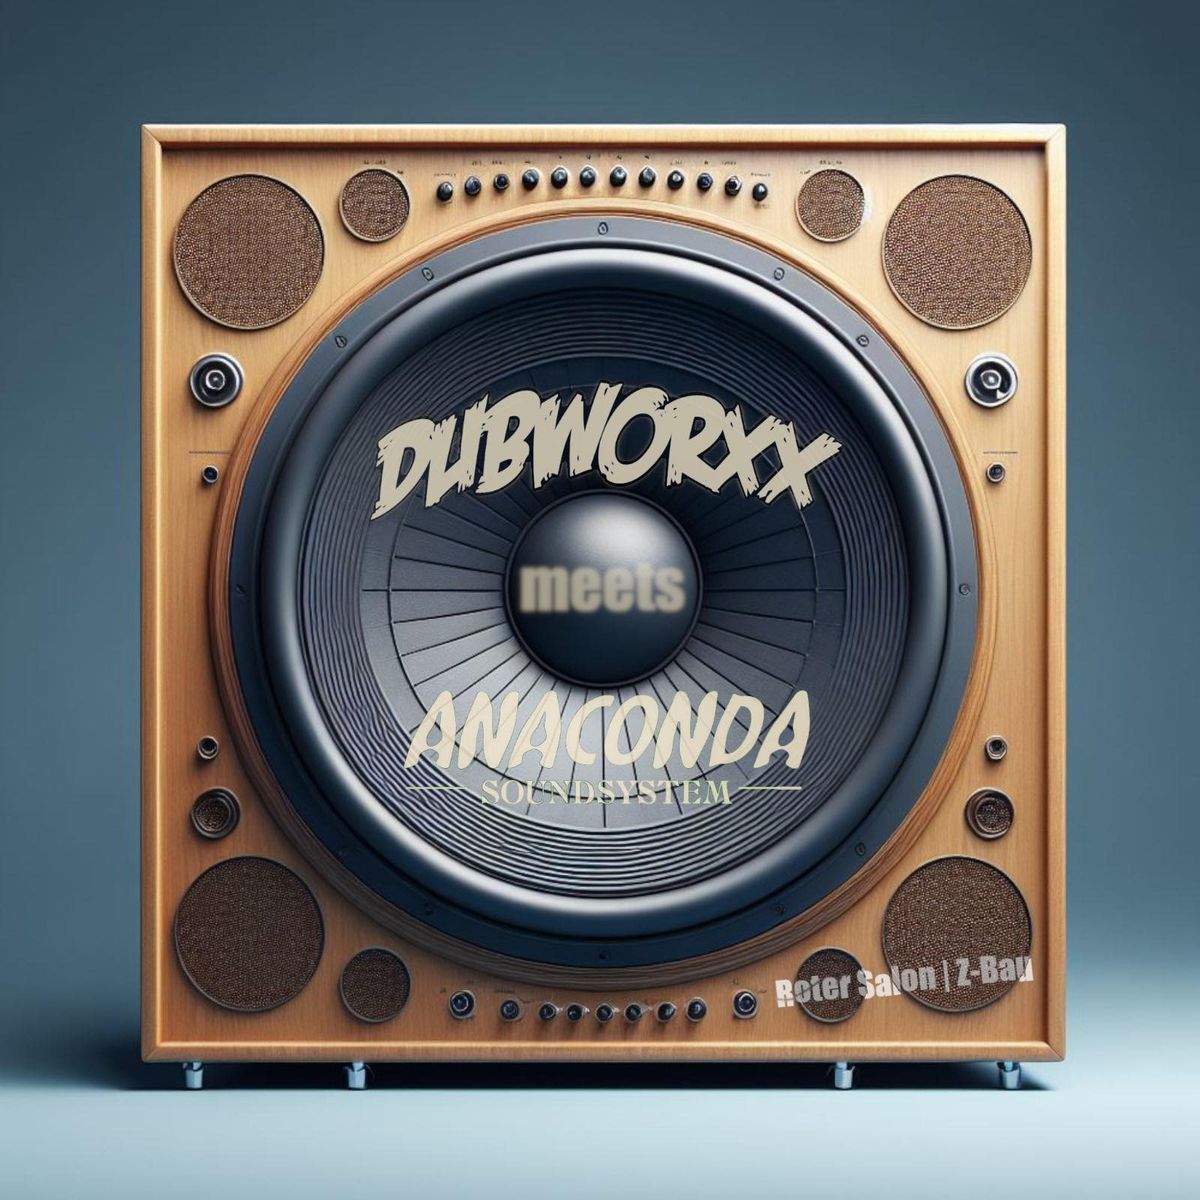 DubWorXx meets Anaconda Soundsystem